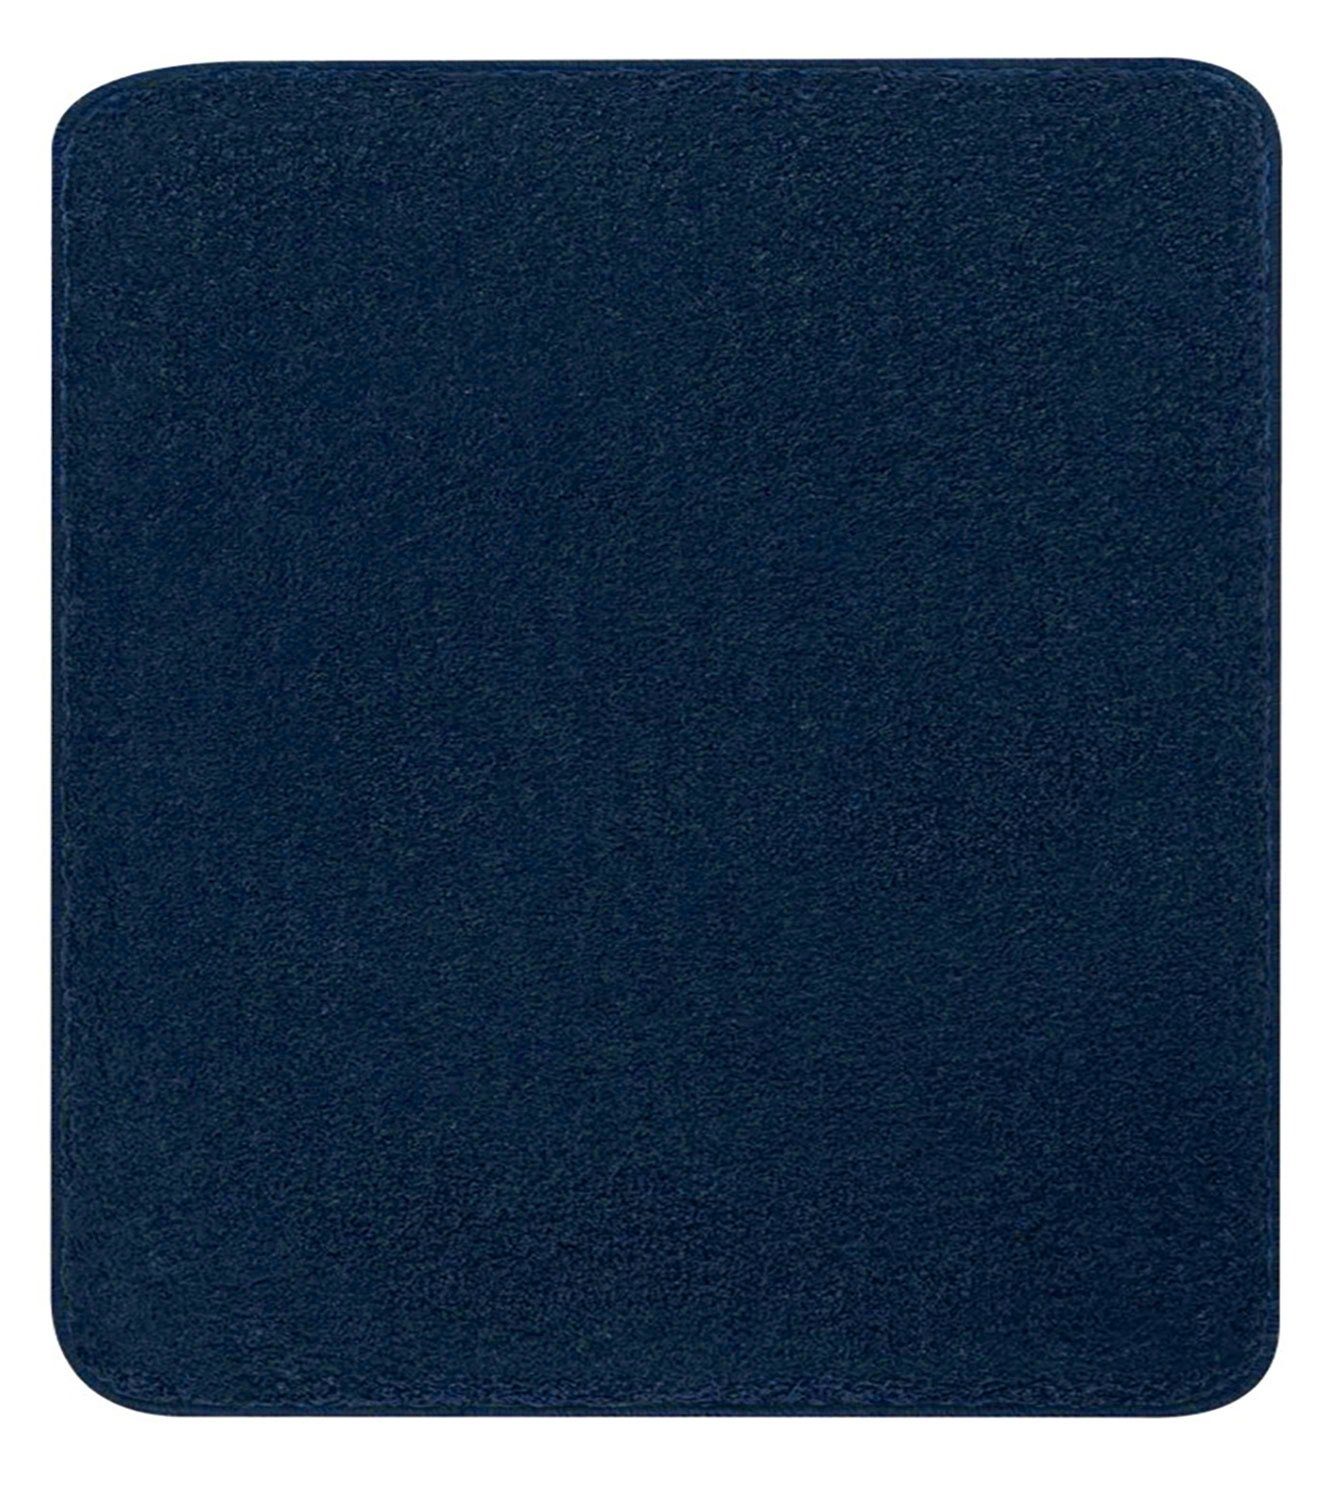 Badematte MEADOW, Blau, 60 x 50 cm, Uni Kleine Wolke, Höhe 30.0 mm, rutschhemmend beschichtet, fußbodenheizungsgeeignet, Polyester, rechteckig